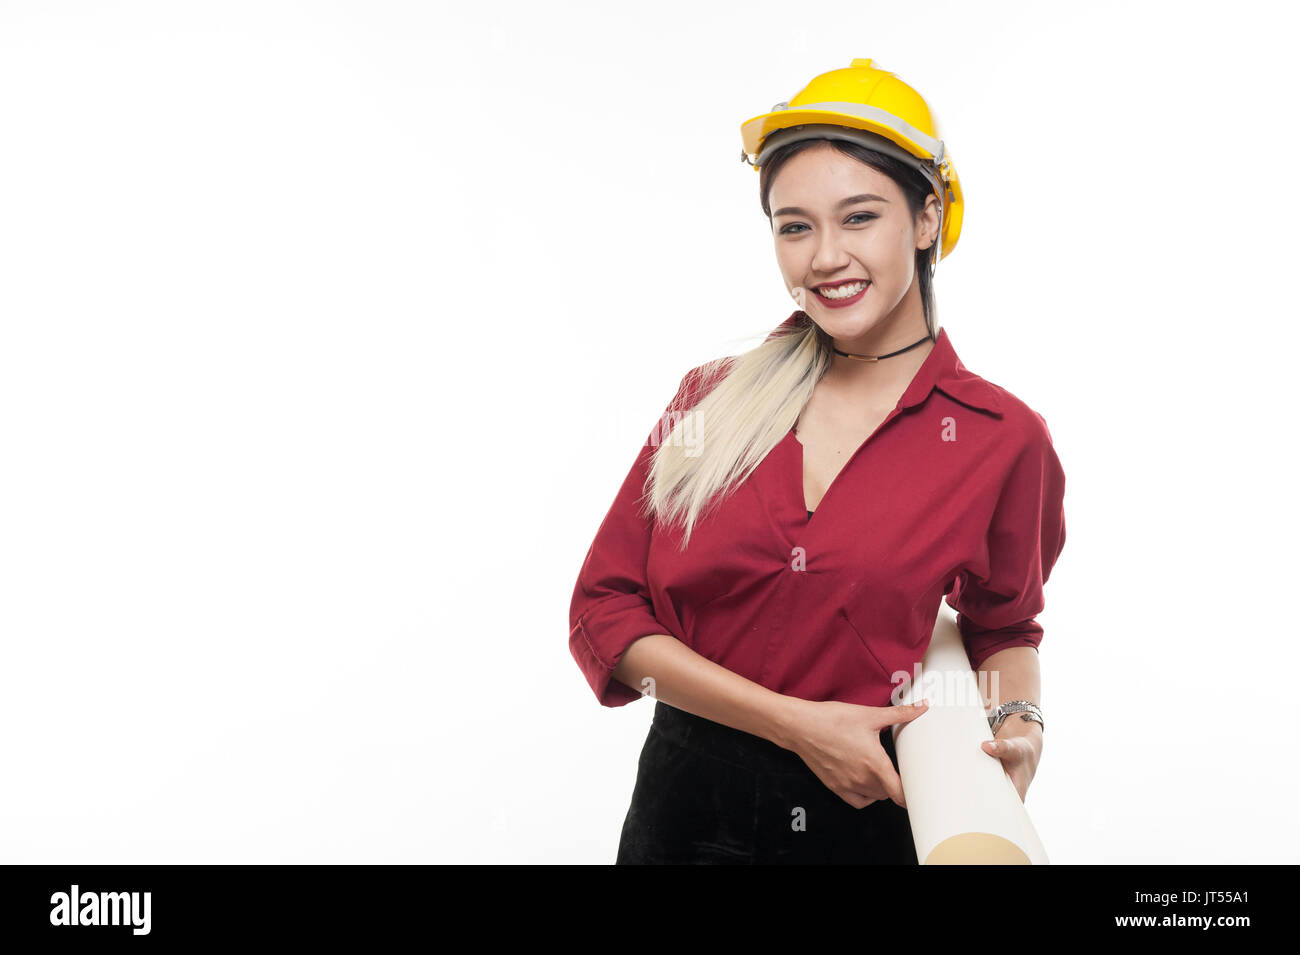 Junge asiatische Frau Architekt mit roten Hemd und gelben Helm Lächeln beim Tragen Blaupause Papiere. industriellen Beruf Personen Konzept Stockfoto